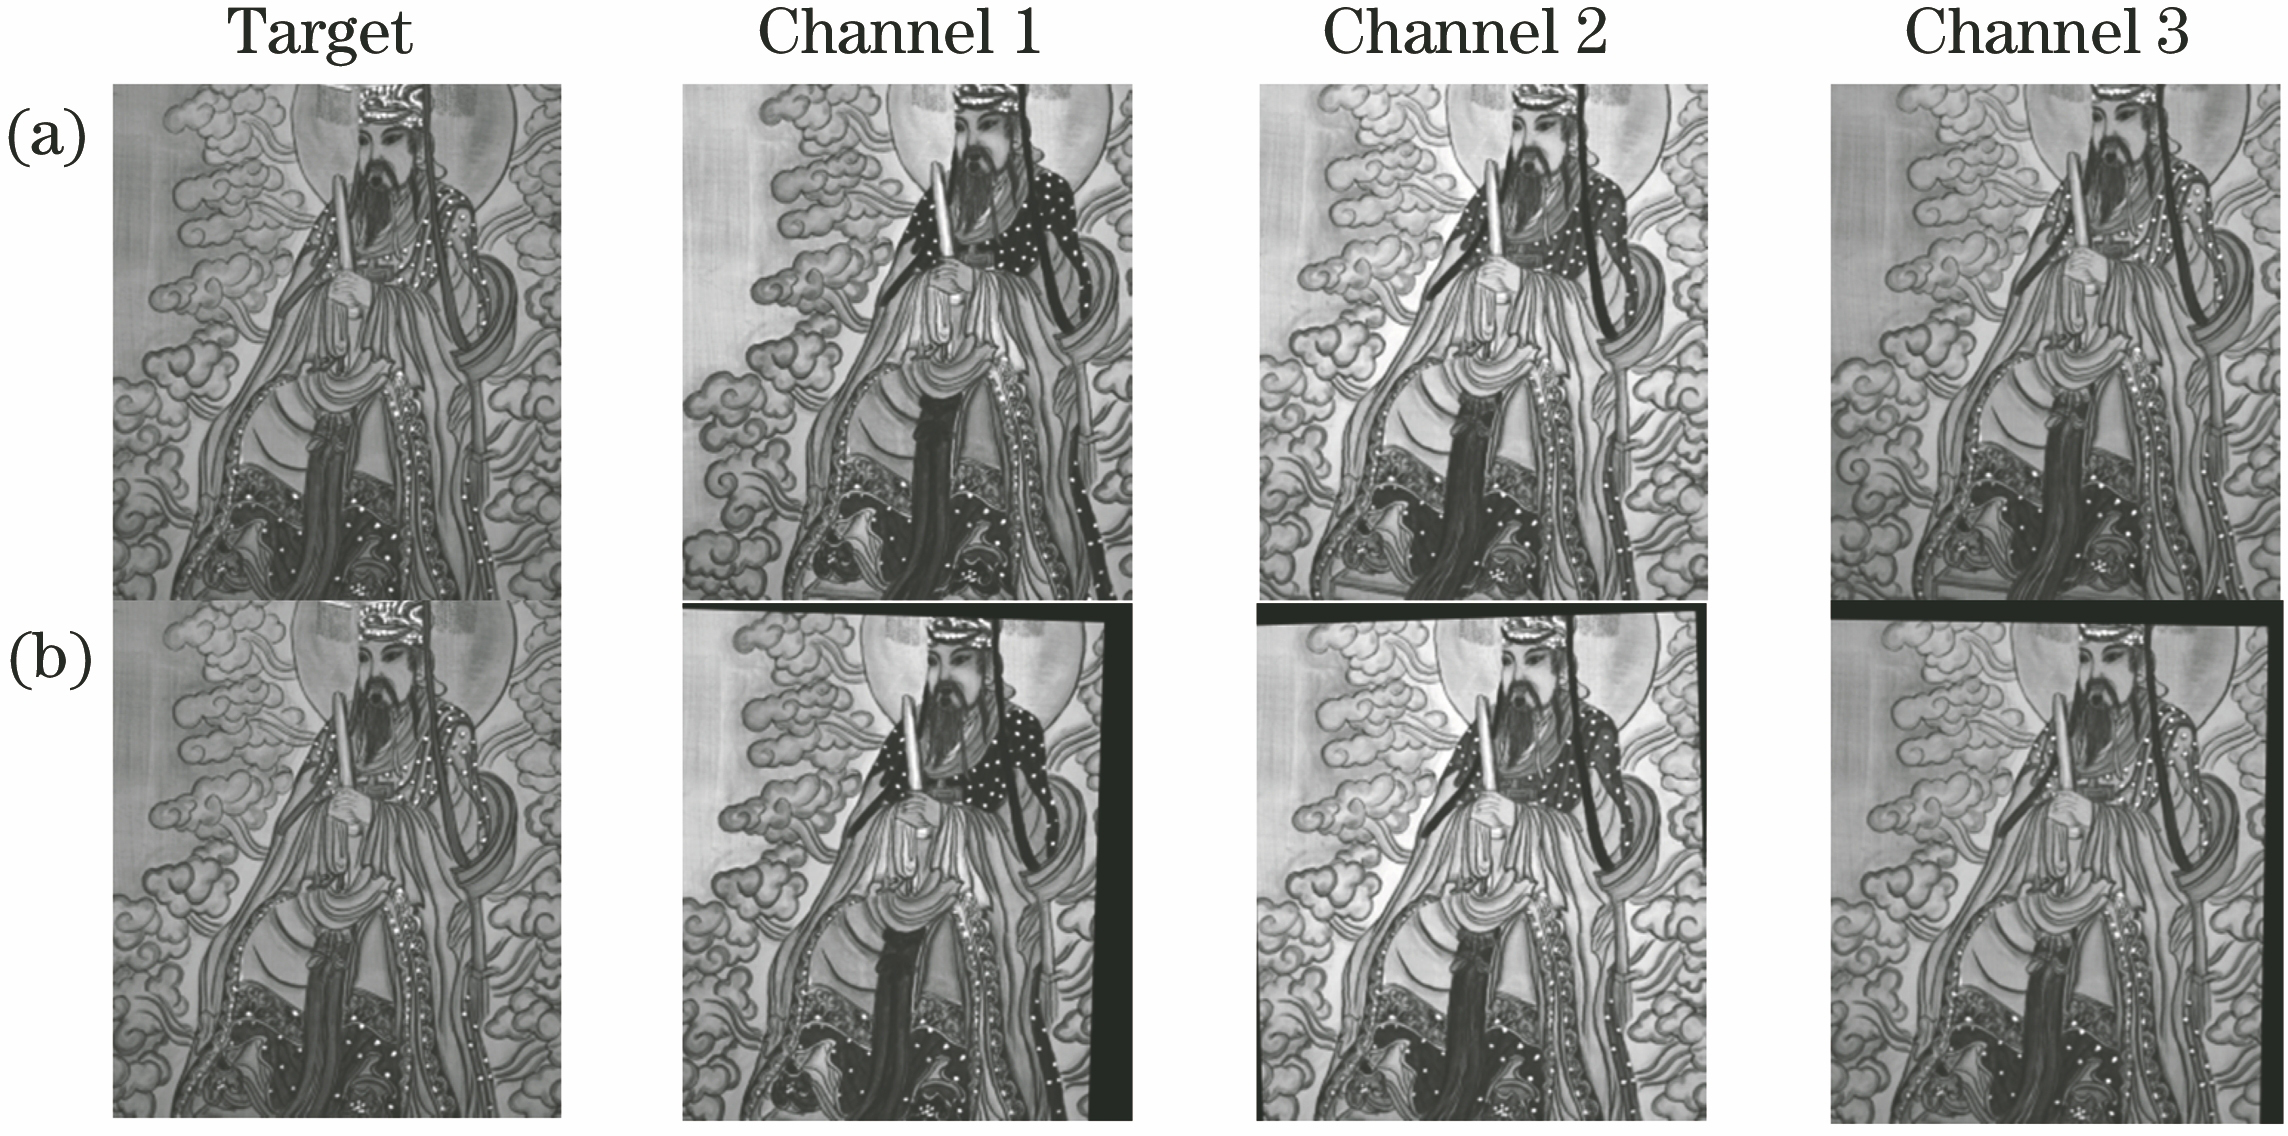 Multi-channel spectral original image and image after SURF registration. (a) Target image and multi-channel spectral image to be registered; (b) target image and multi-channel spectral image after SURF registration